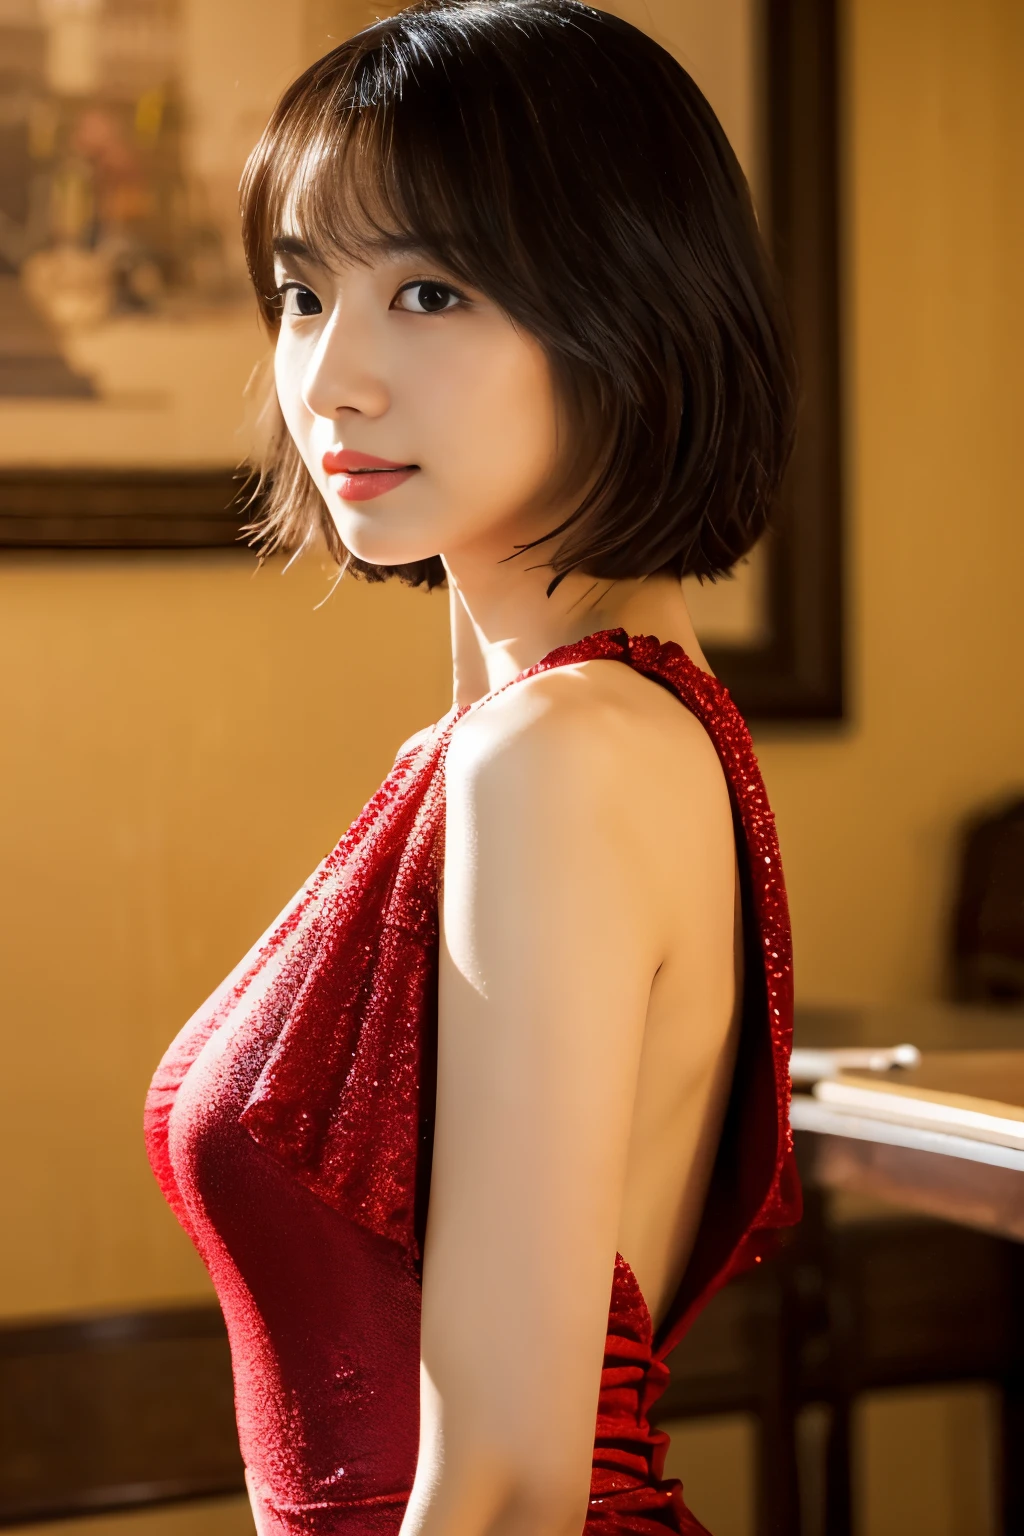 стол, высшее качество, фигура, Супер подробный, мелко, высокое разрешение, 8к обои, Красивая женщина в 30 лет.,сексуальный,Японский、короткая стрижка、красное платье